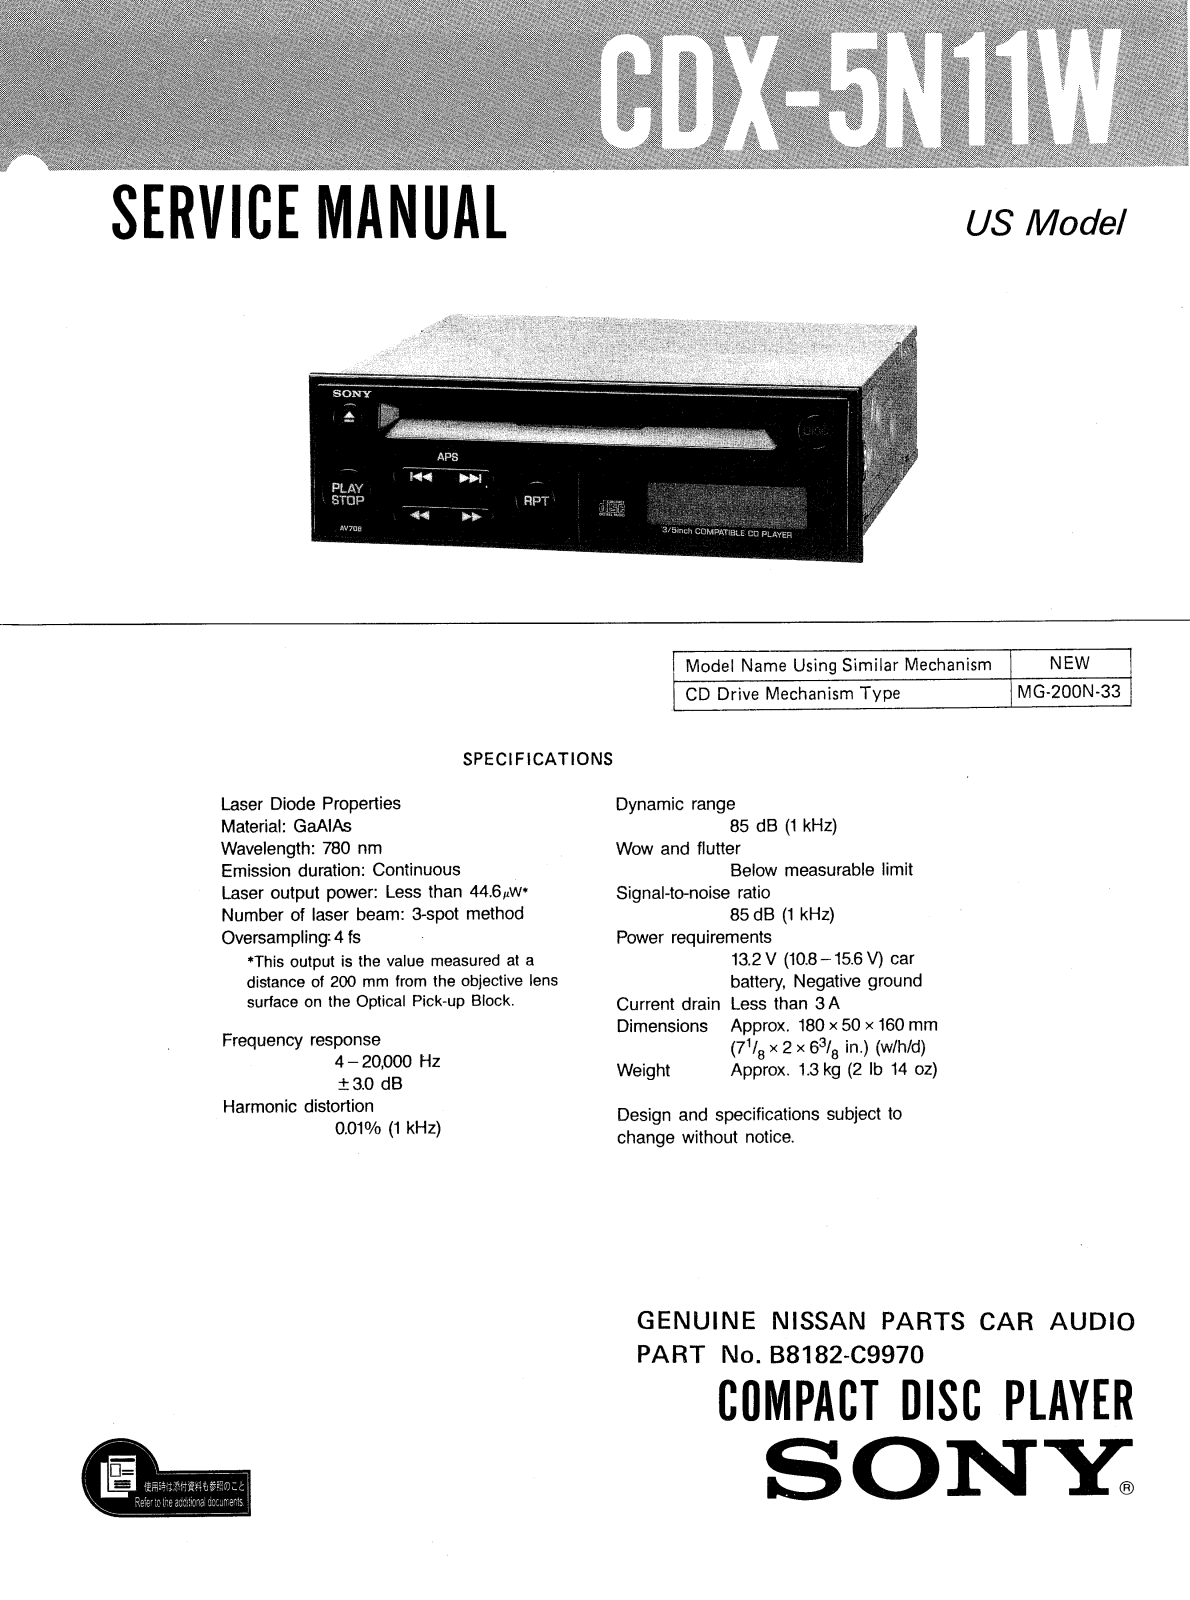 Sony CDX-5N11W Service Manual